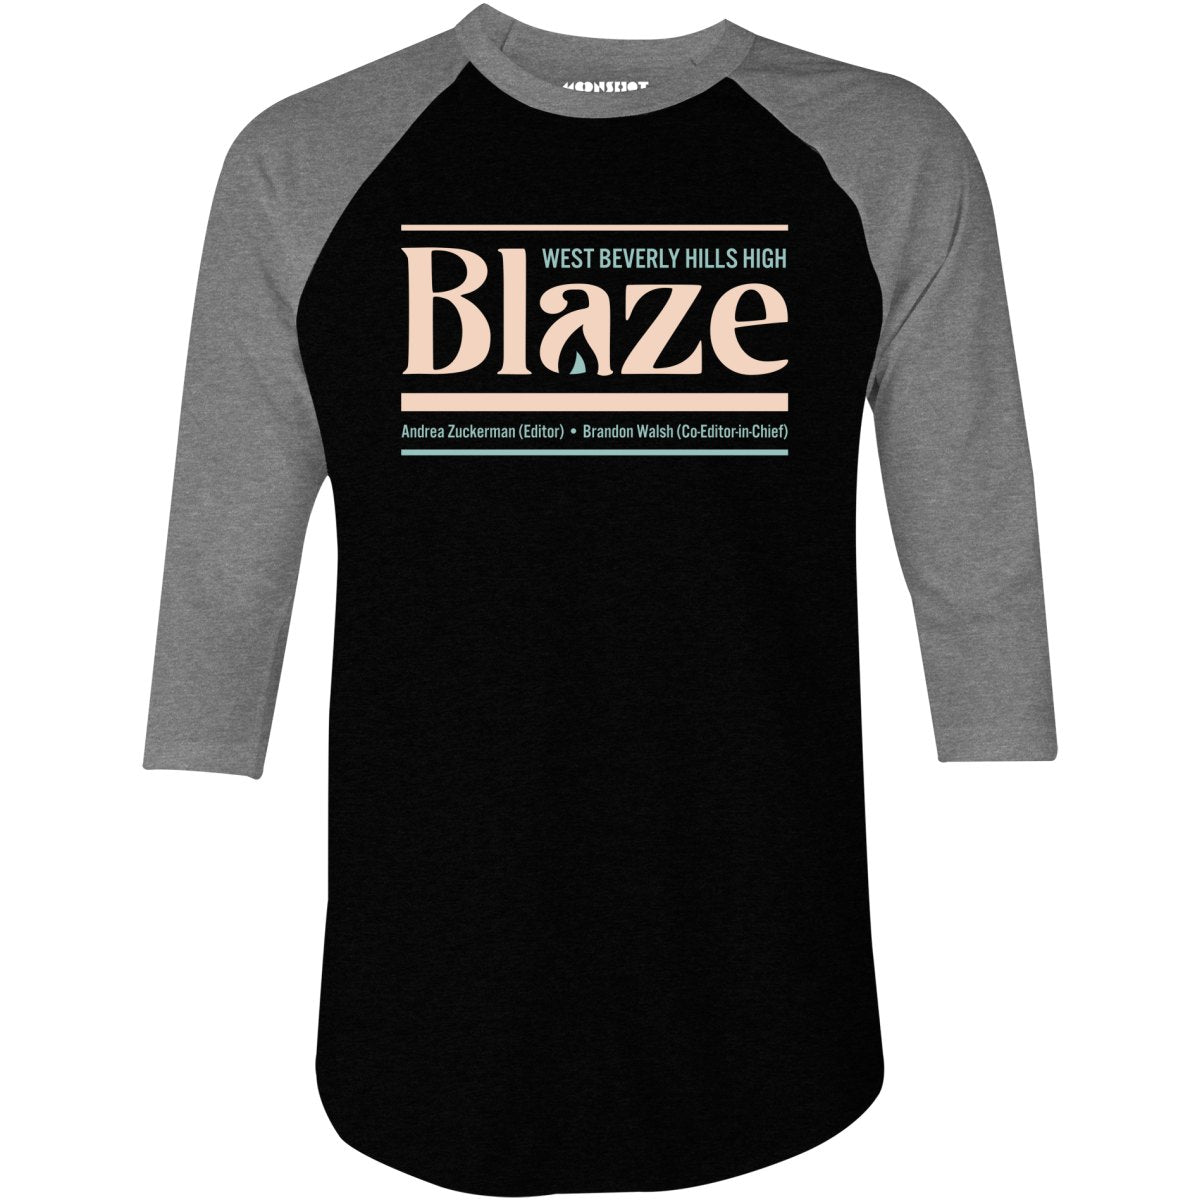 West Beverly Hills High Blaze Newspaper 90210 - 3/4 Sleeve Raglan T-Shirt